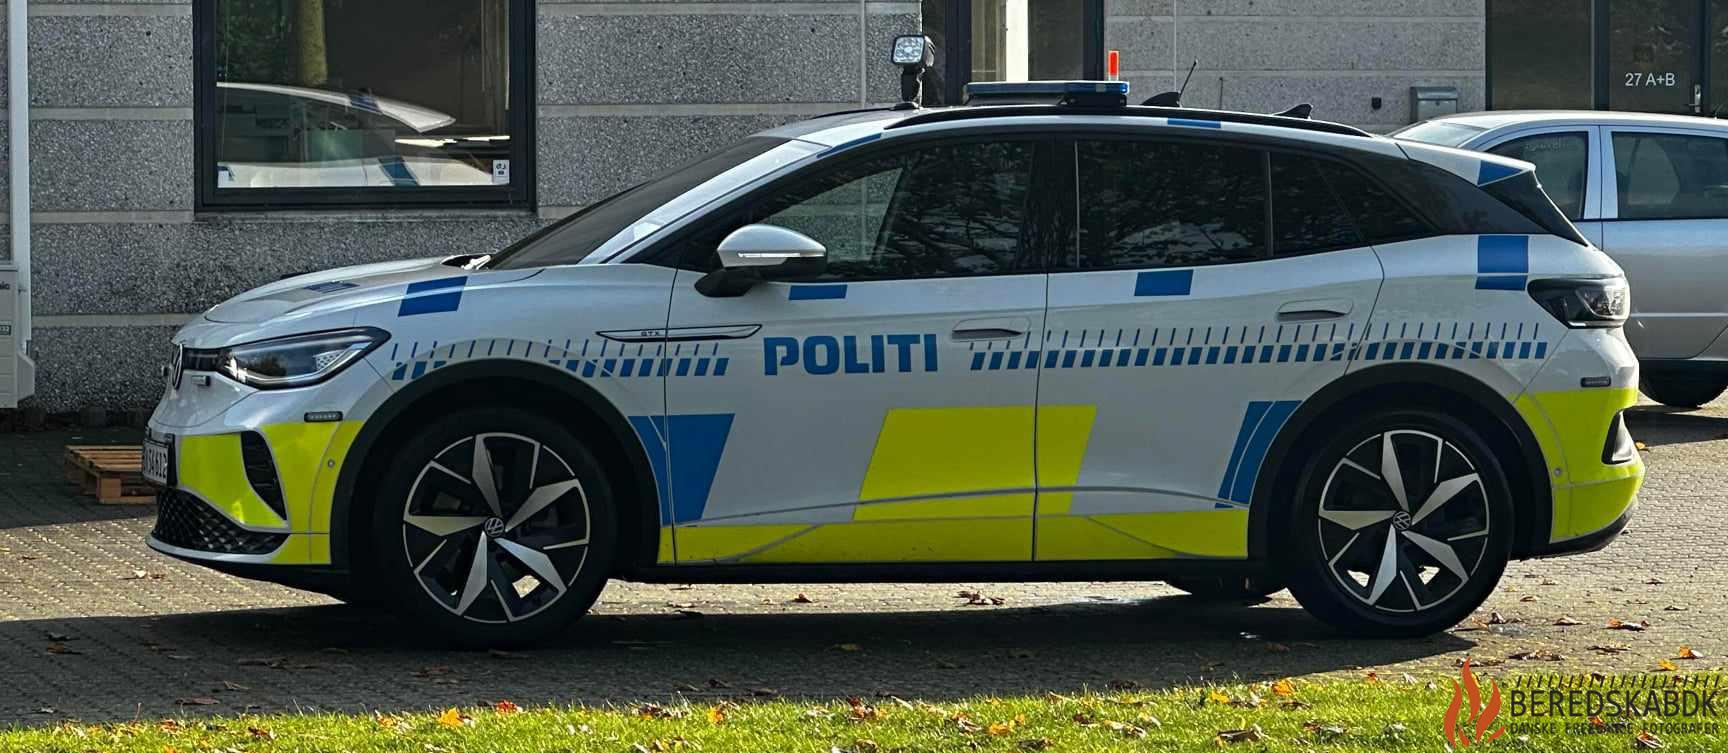 07/11-23 Klovborg: Efterlyst mand hentet af politiet